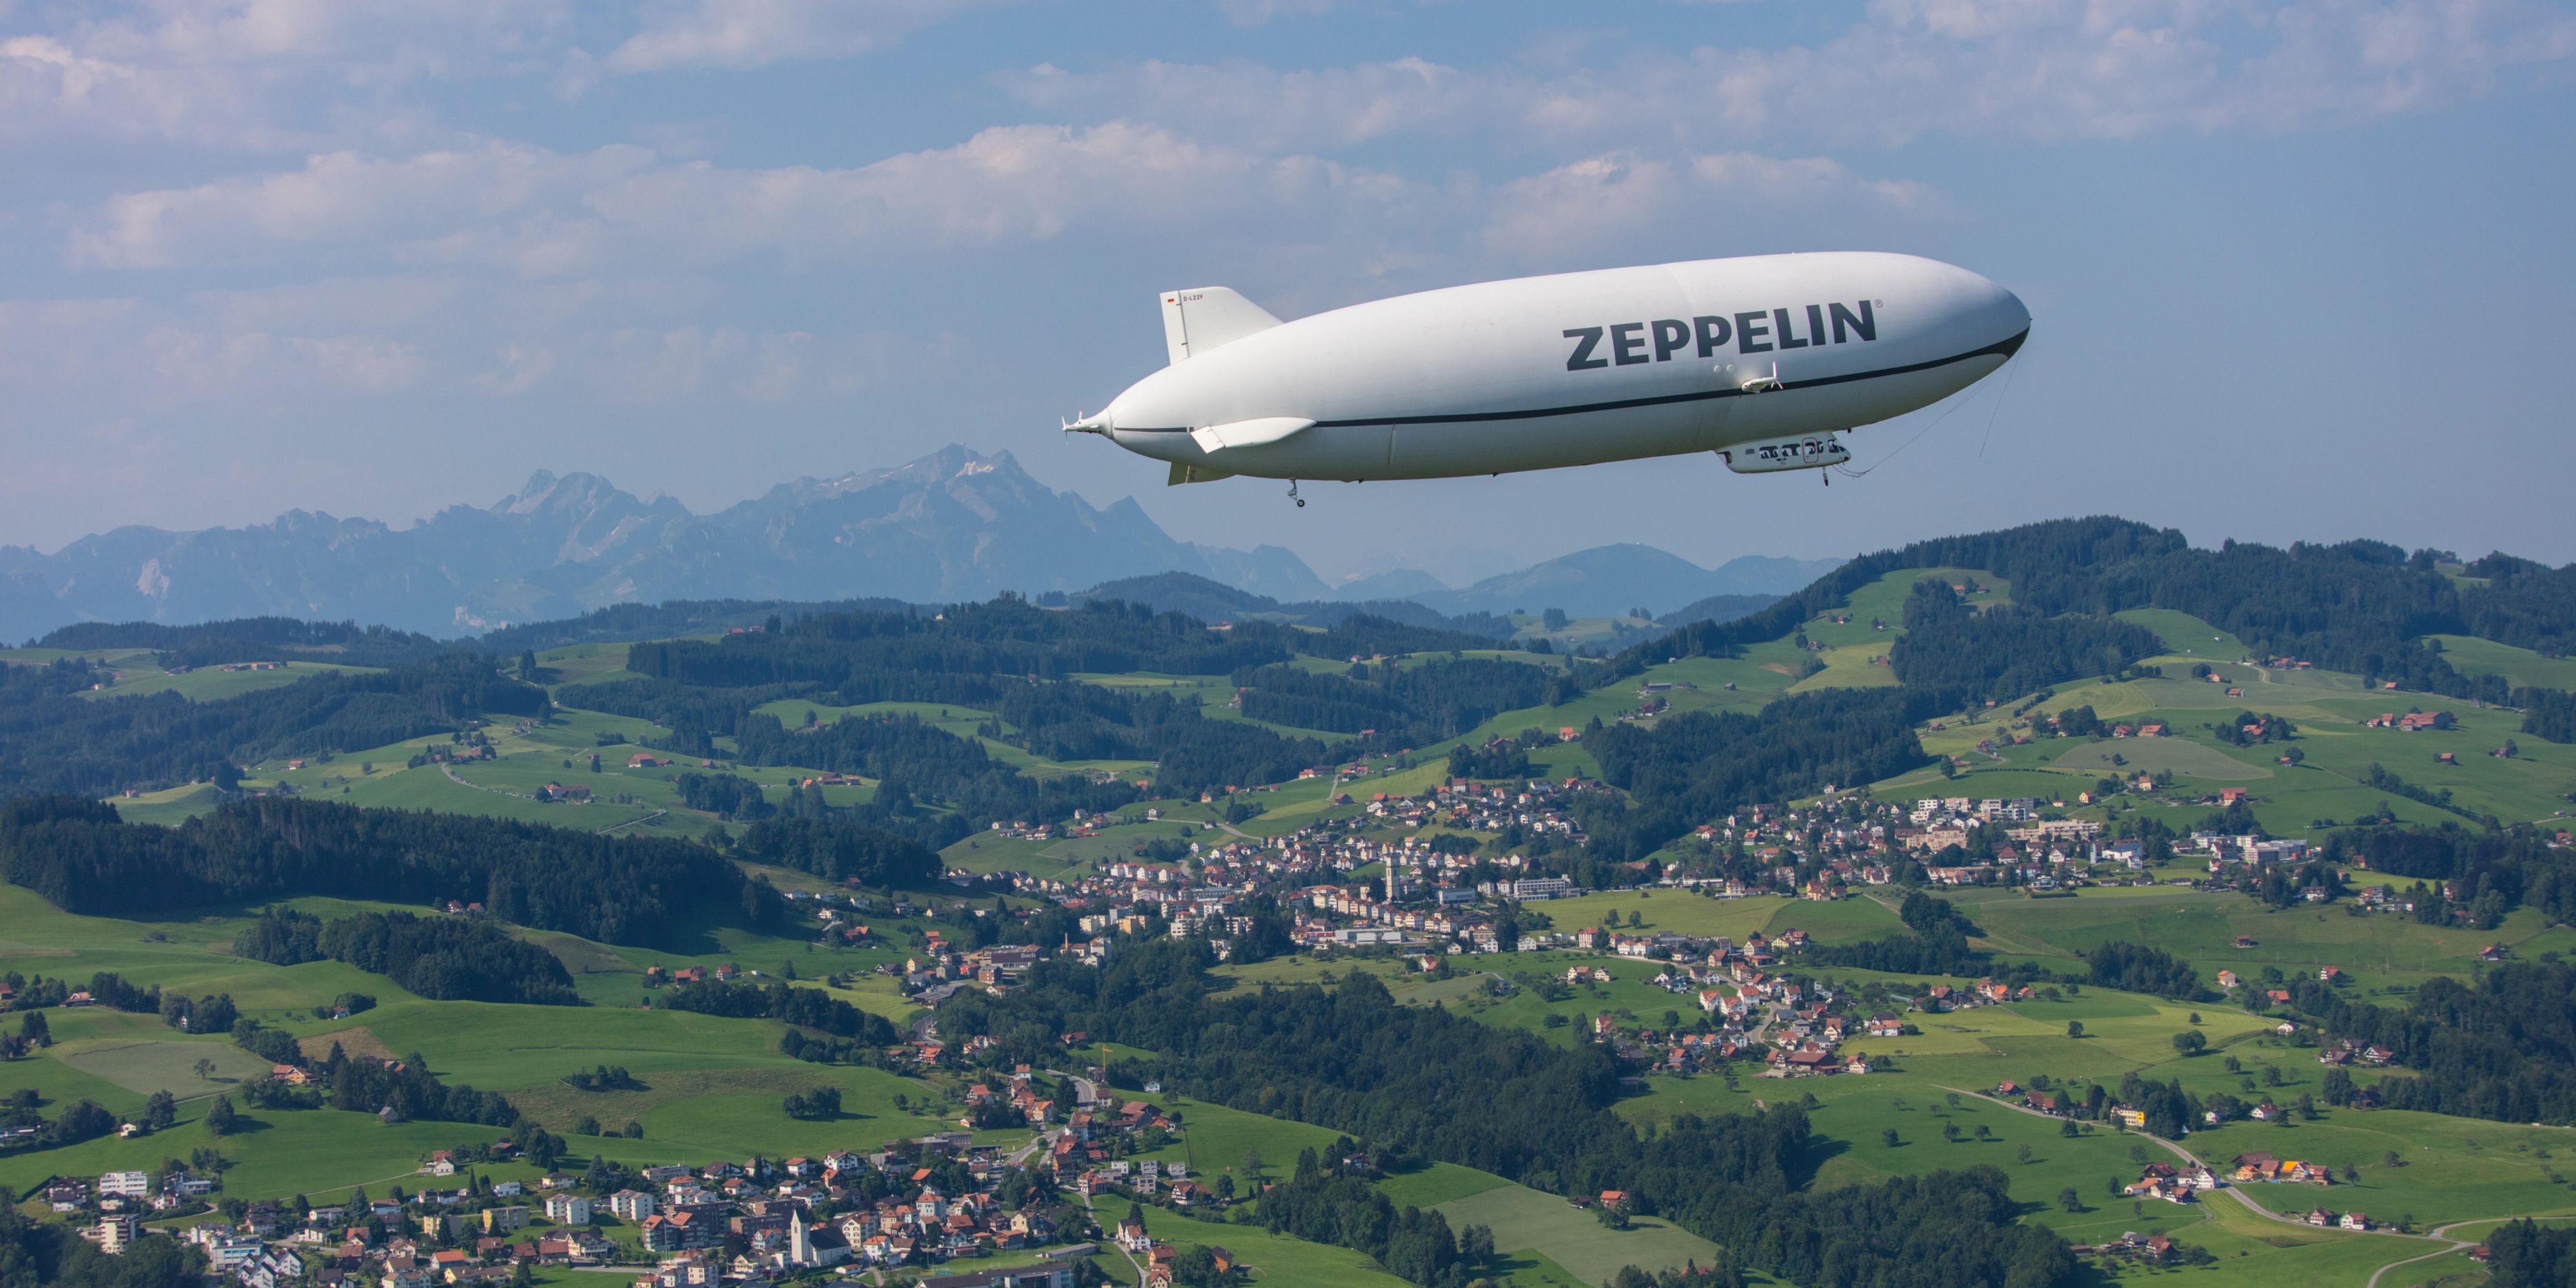 Erleben Sie das einzigartige Zeppelin-Gefühl und spektakuläre Perspektiven auf die Bodenseeregion. Ein Rundflug mit dem Zeppelin ist ein unvergessliches Erlebnis. Wählen Sie aus 12 verschiedenen Flugrouten über dem Bodensee und entdecken Sie das weltweit einzigartige Sightseeing-Erlebnis in 300 Metern Flughöhe.